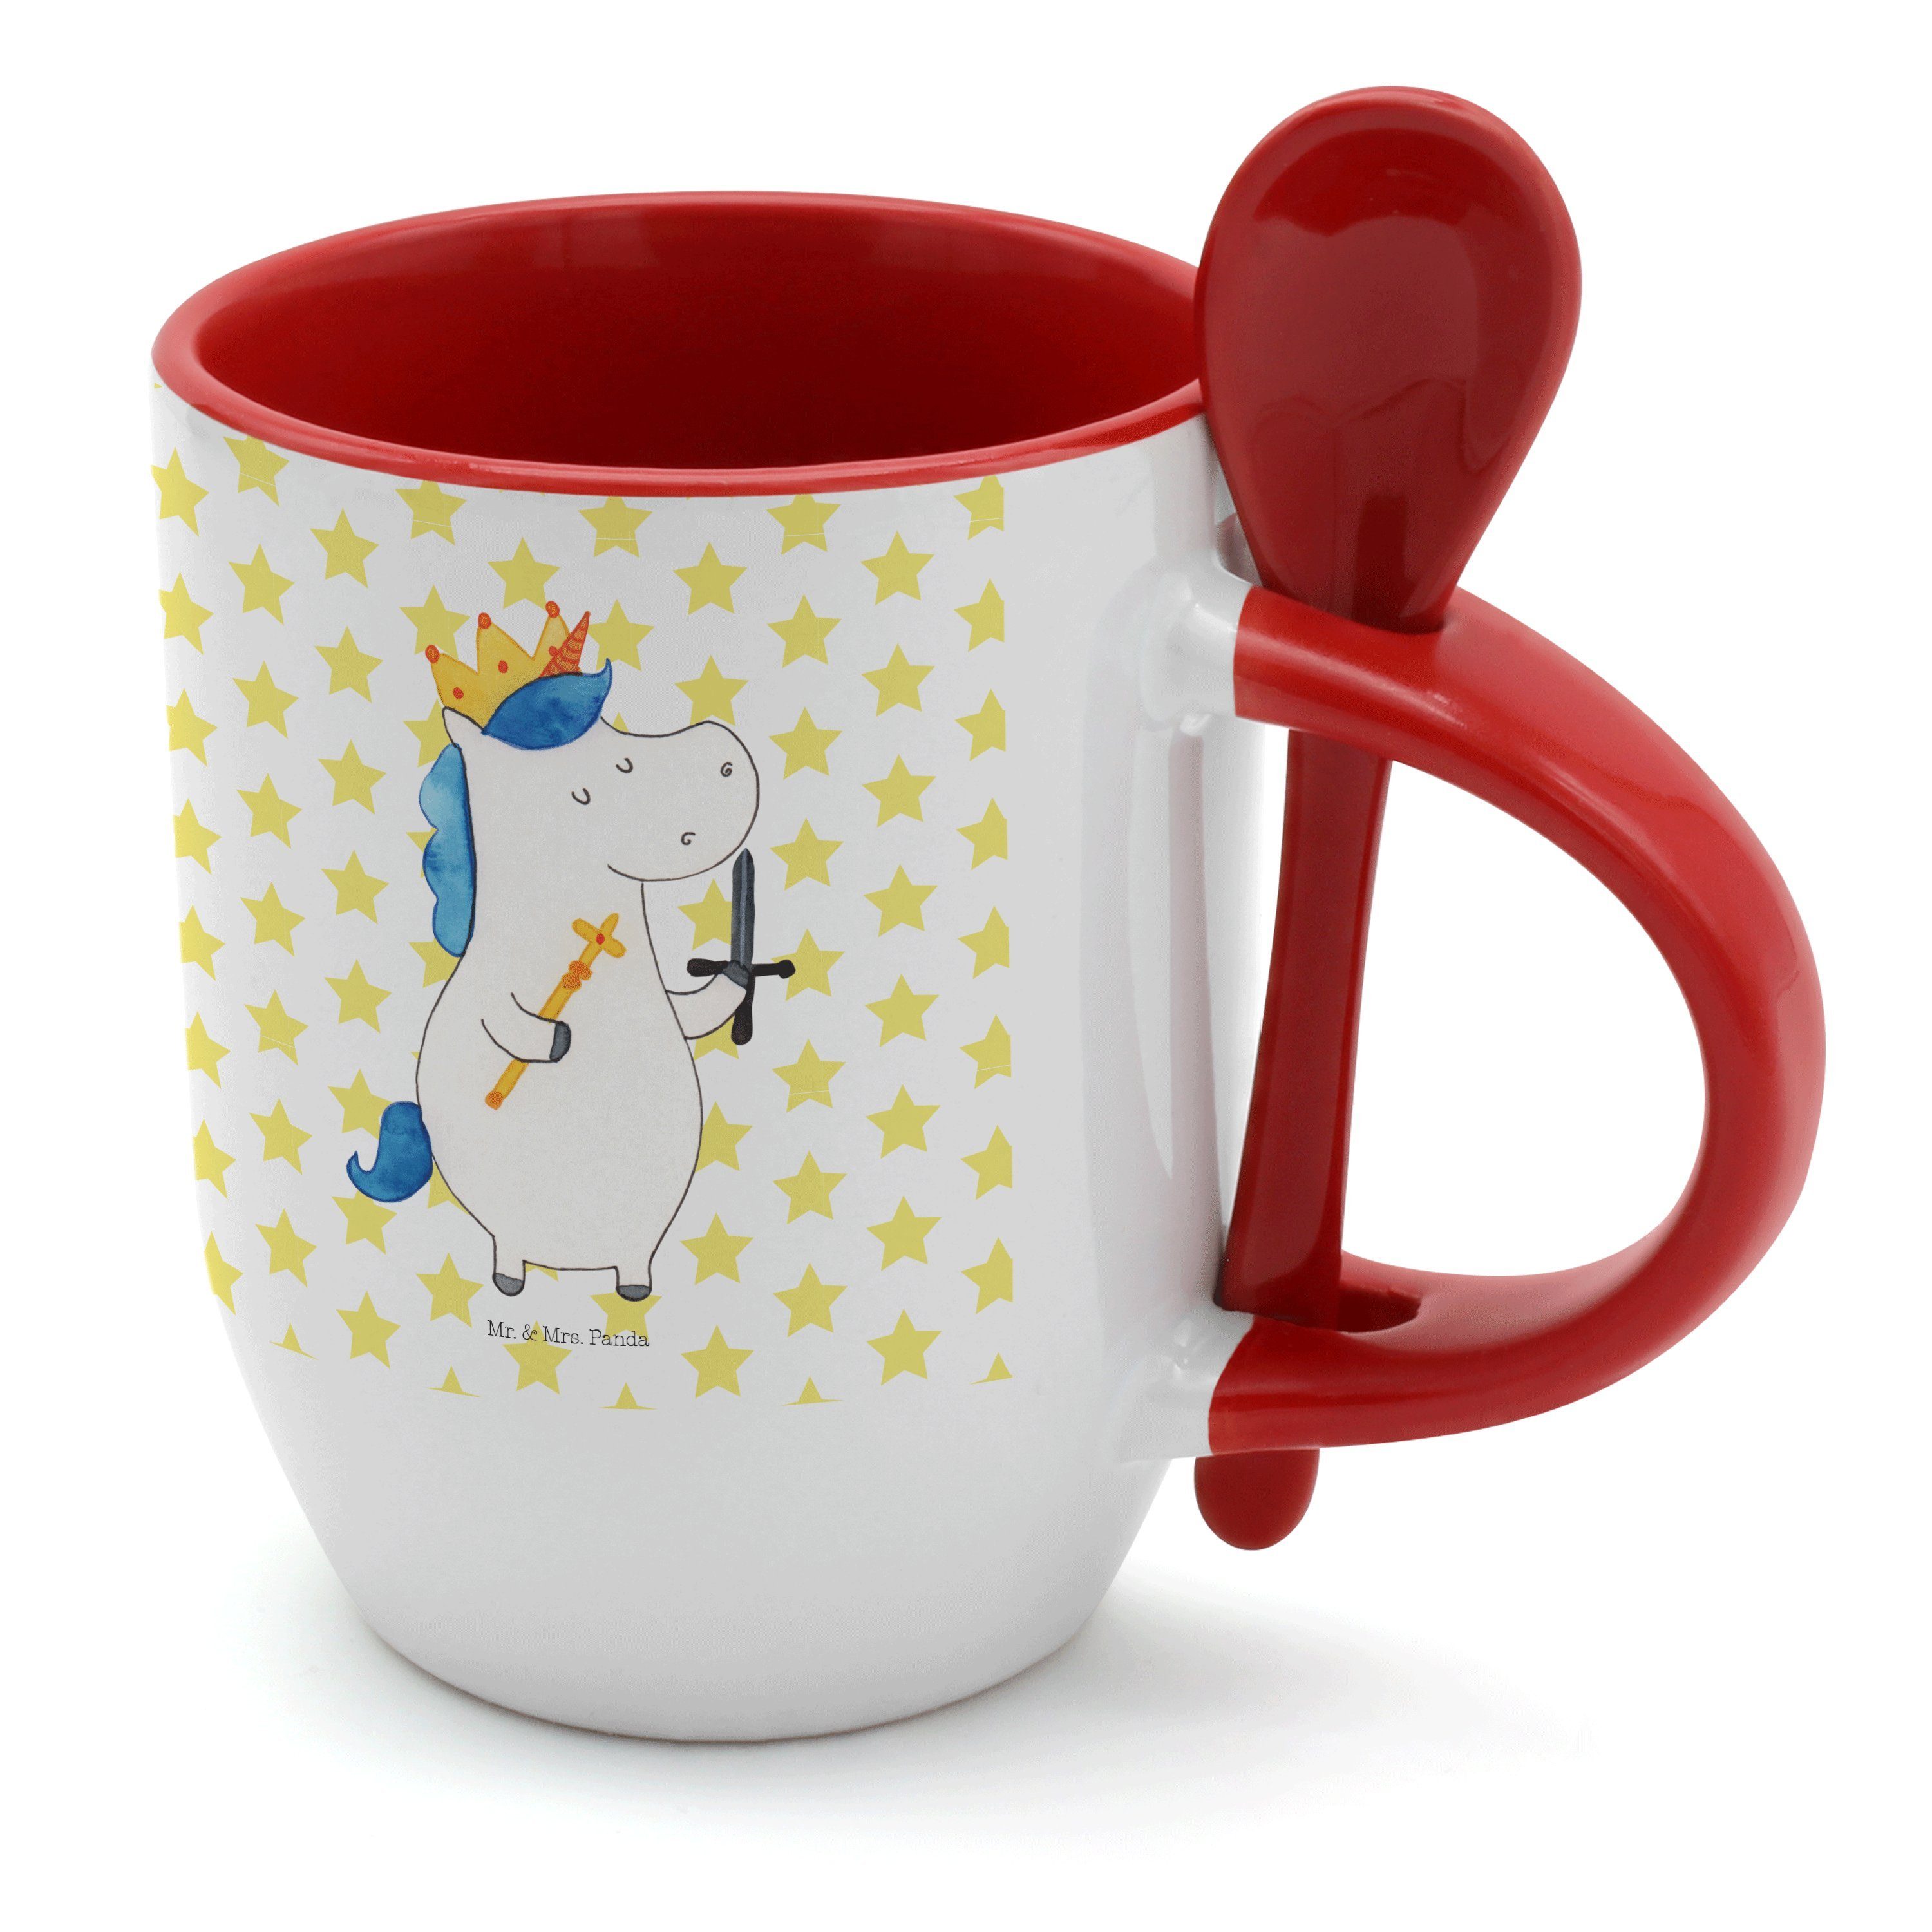 Mr. & Mrs. Panda Tasse Schwert Weiß Kaffeebe, Einhorn Unicorn, mit - König Tasse, - Keramik Geschenk